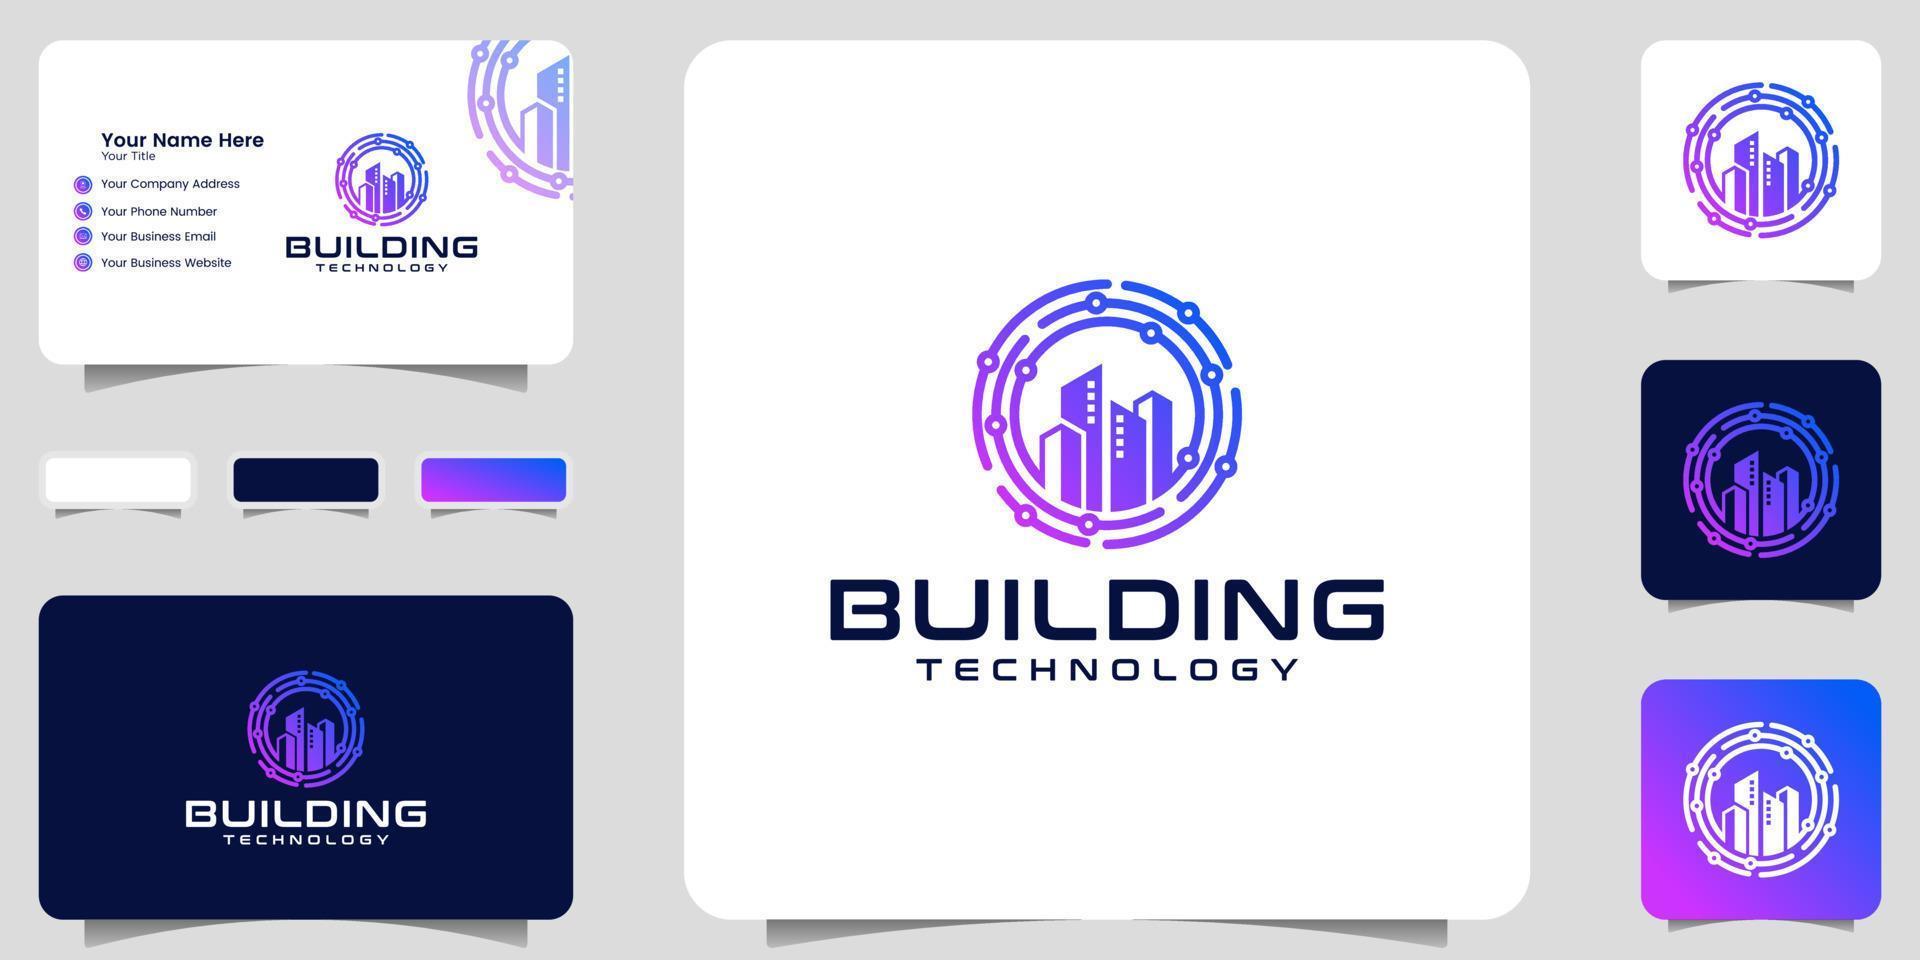 gebouw logo en technologie cirkel gegevens ontwerpsjabloon en visitekaartje vector